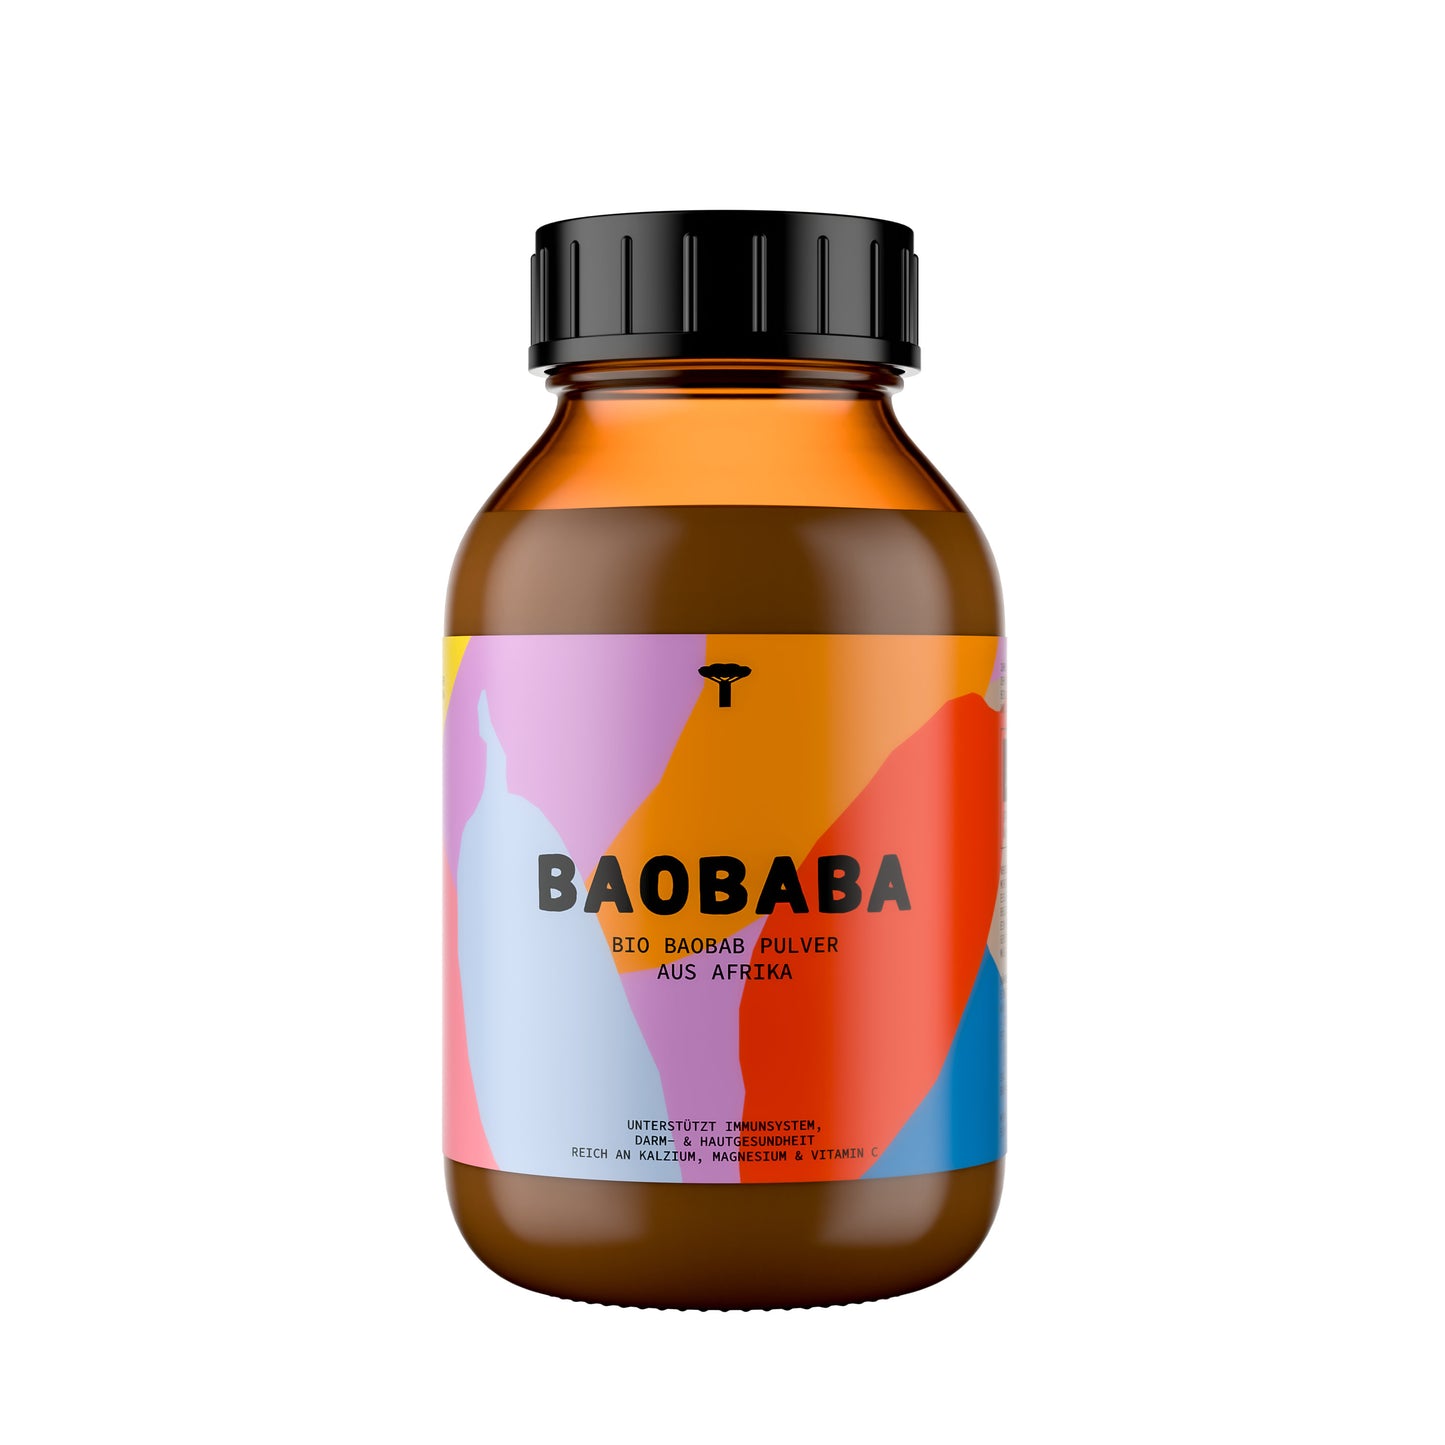 Baobab Pulver in BIO Qualität aus Afrika | 100% natürliches Fruchtpulver vom afrikanischen Affenbrotbaum